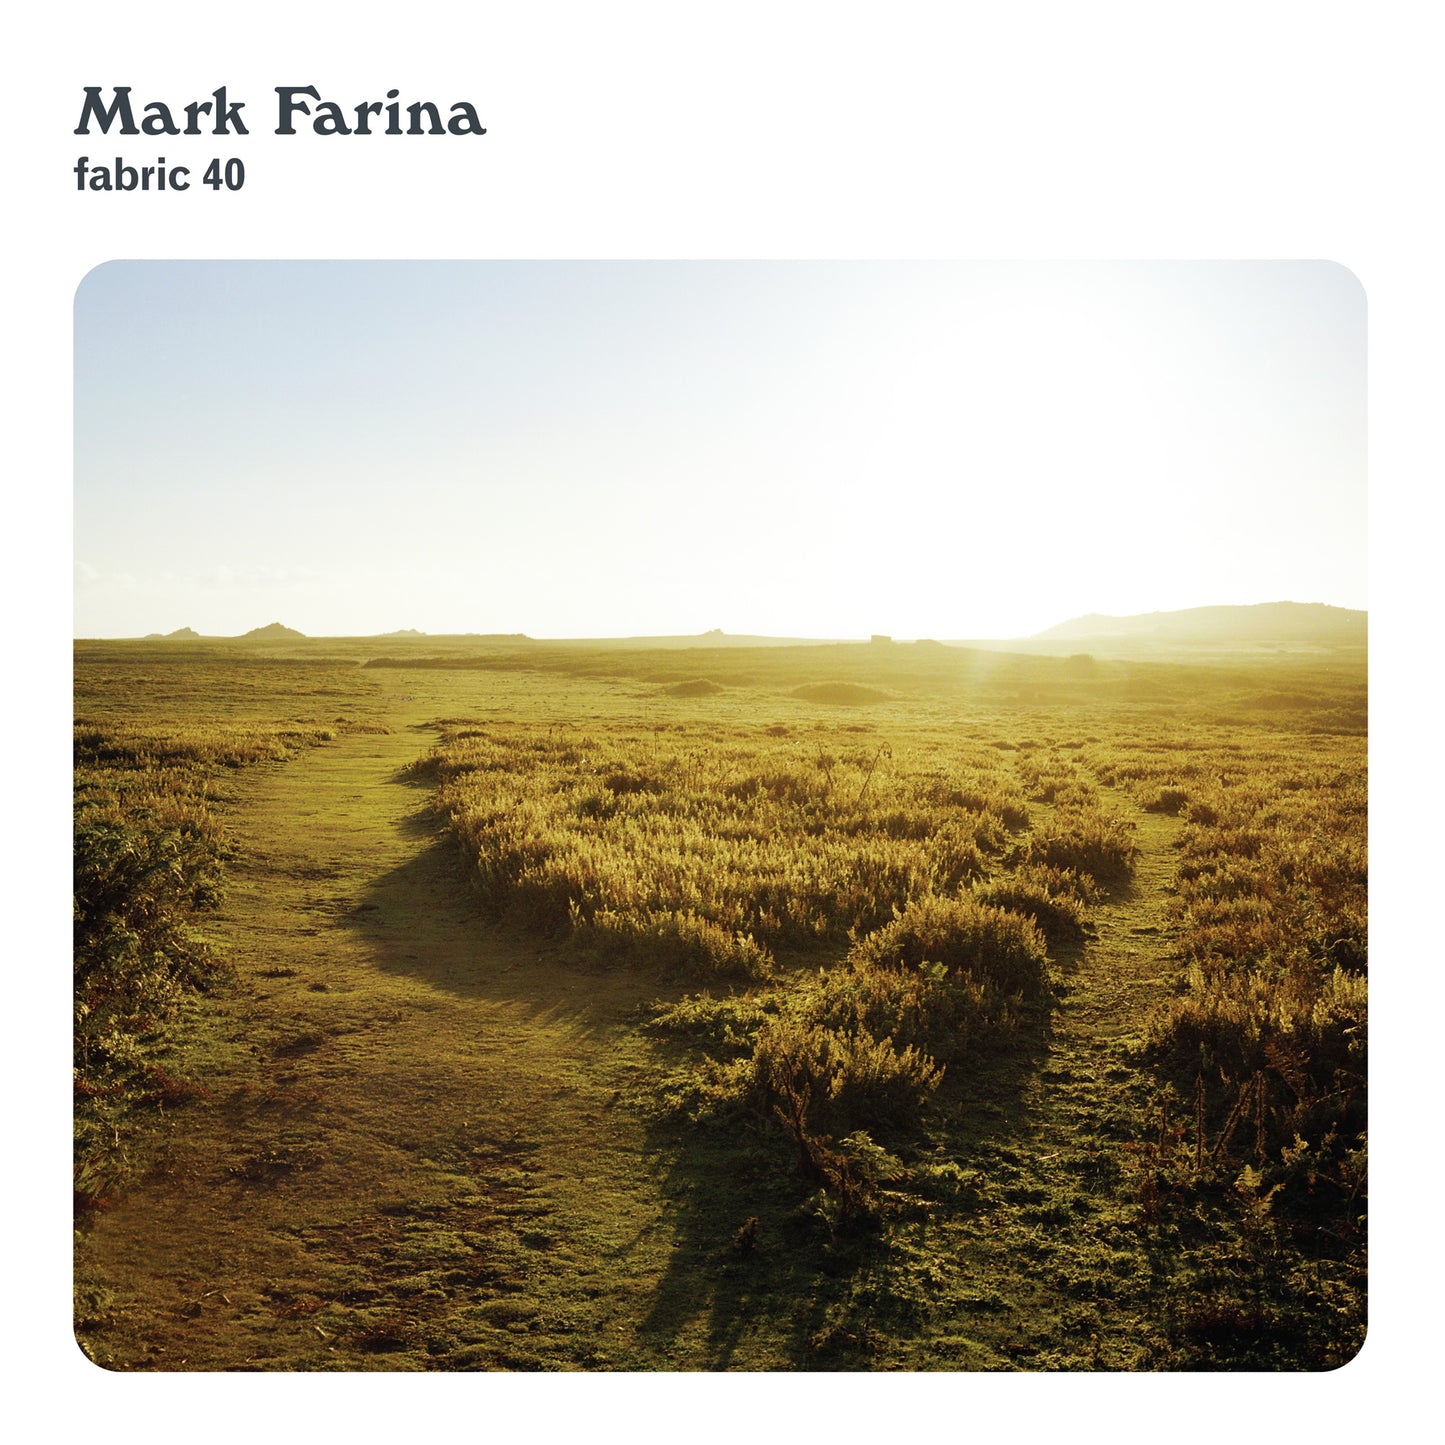 Mark Farina - fabric 40